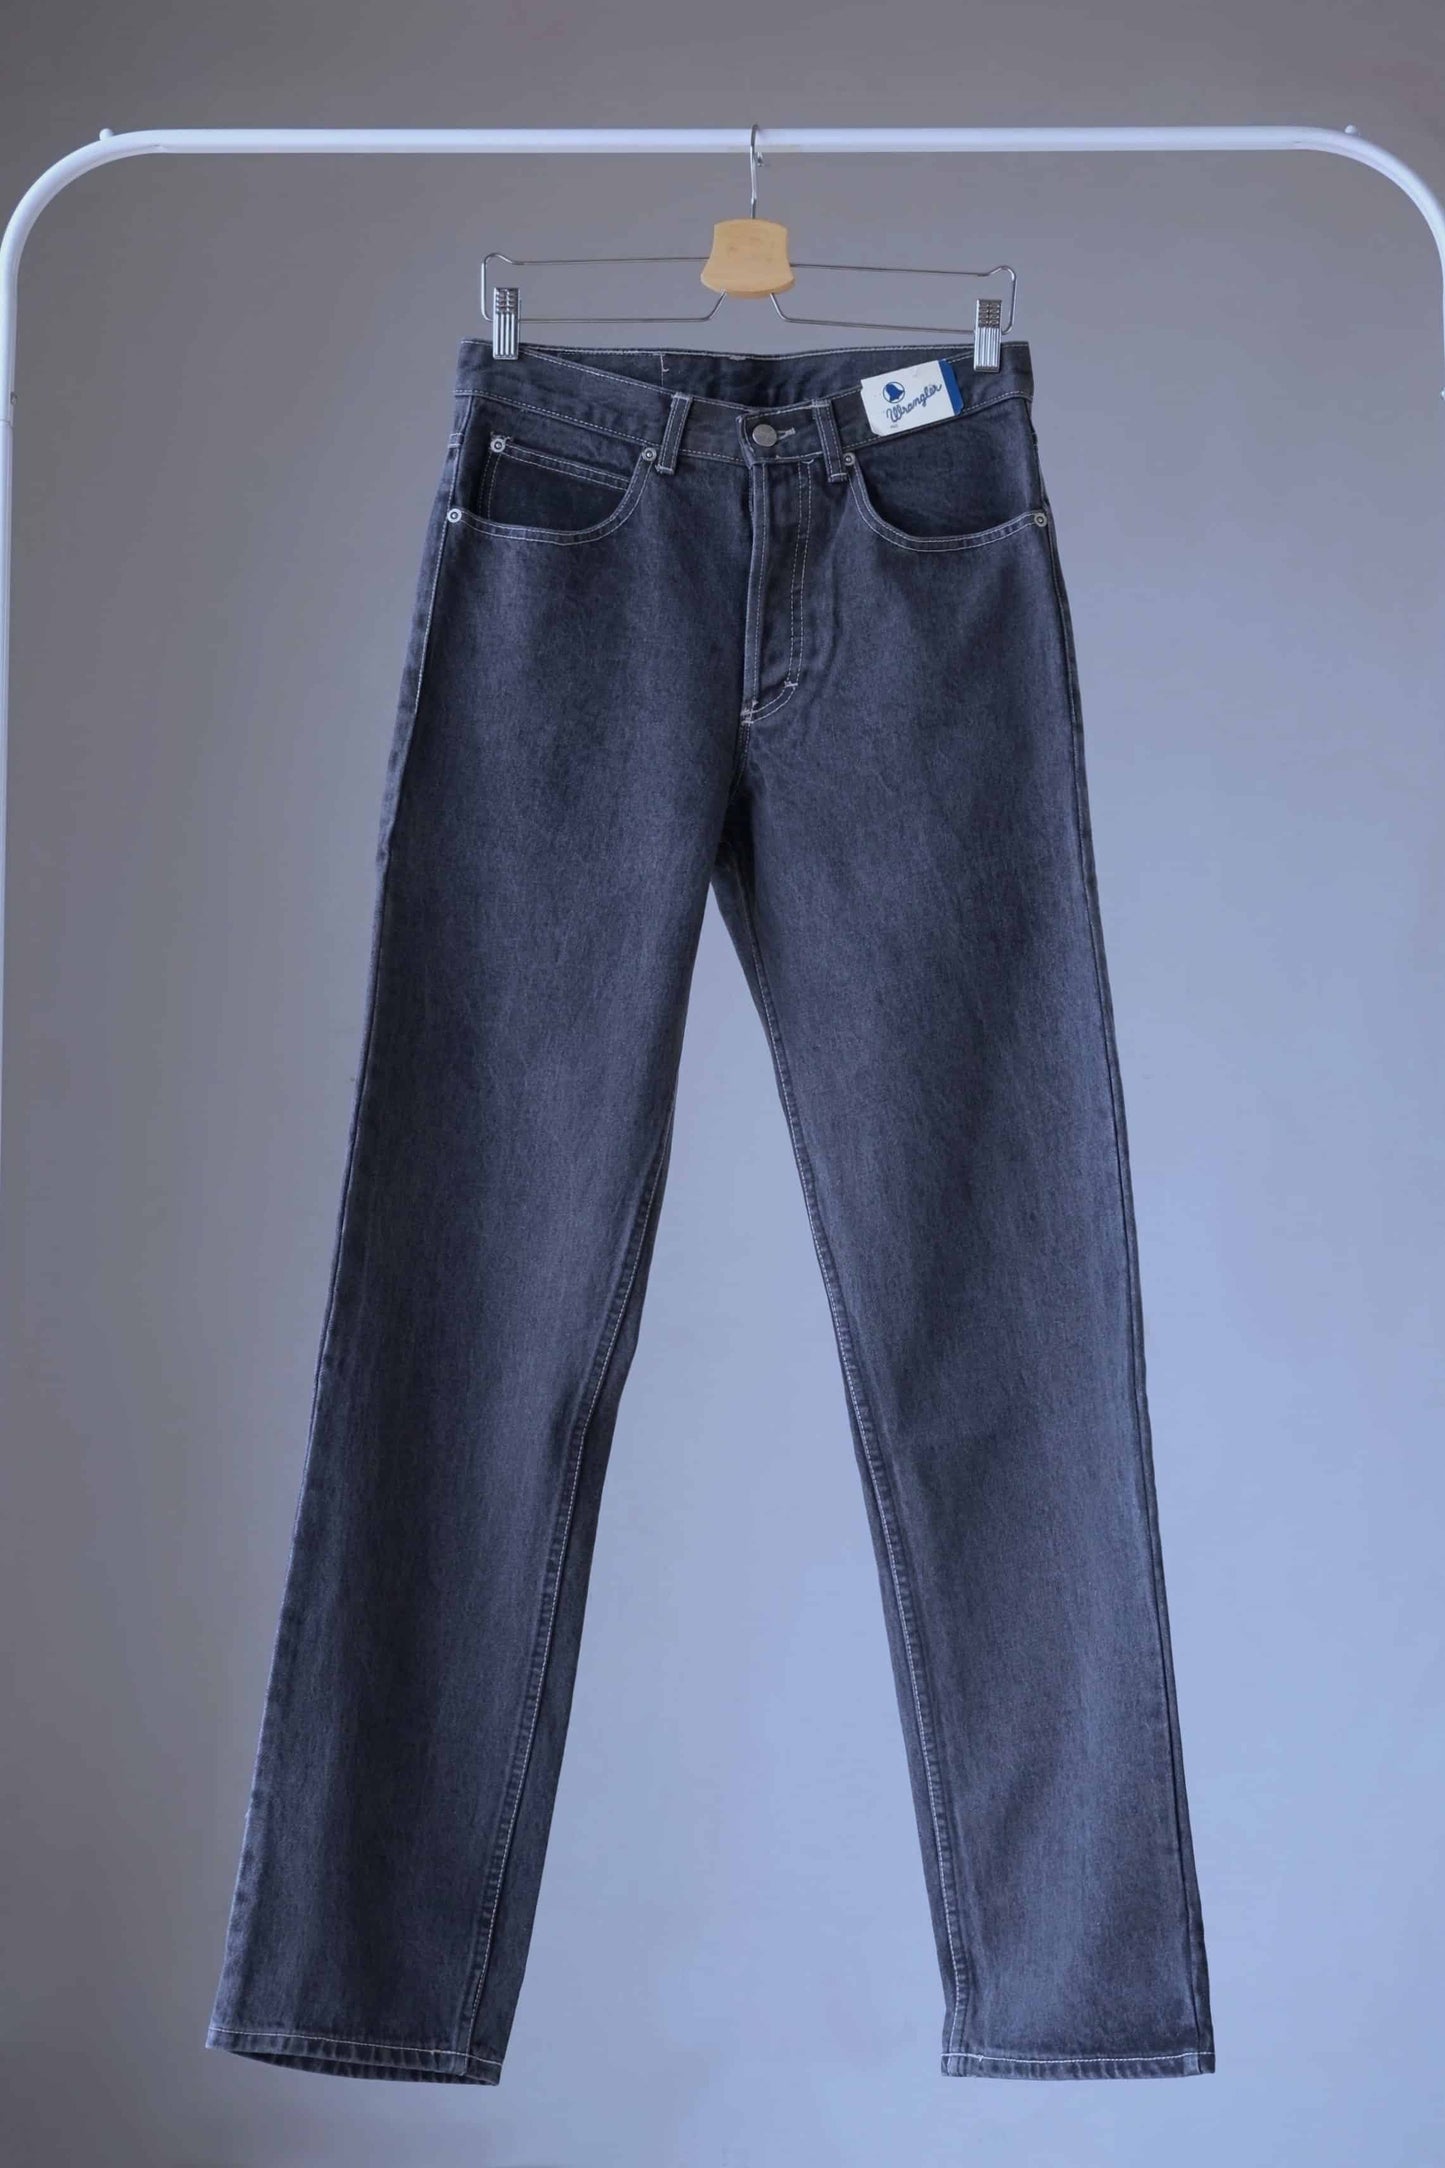 WRANGLER Vintage 90's Black Wash Jeans on hanger